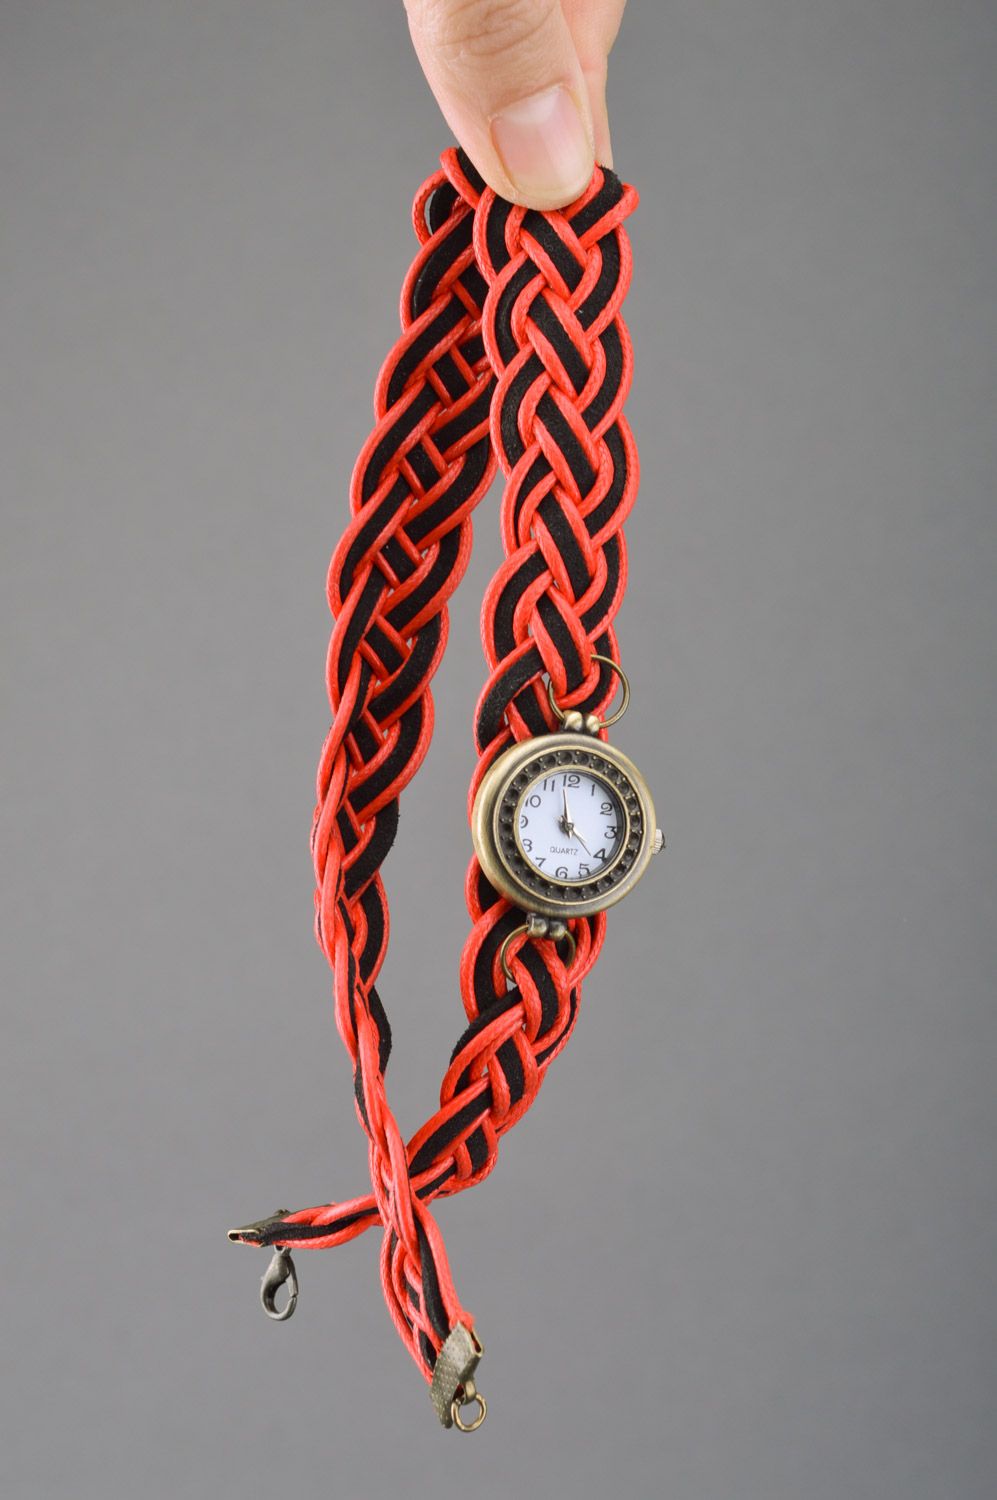 Montre femme bracelet tressé rouge et noir mécanique ronde originale faite main photo 3